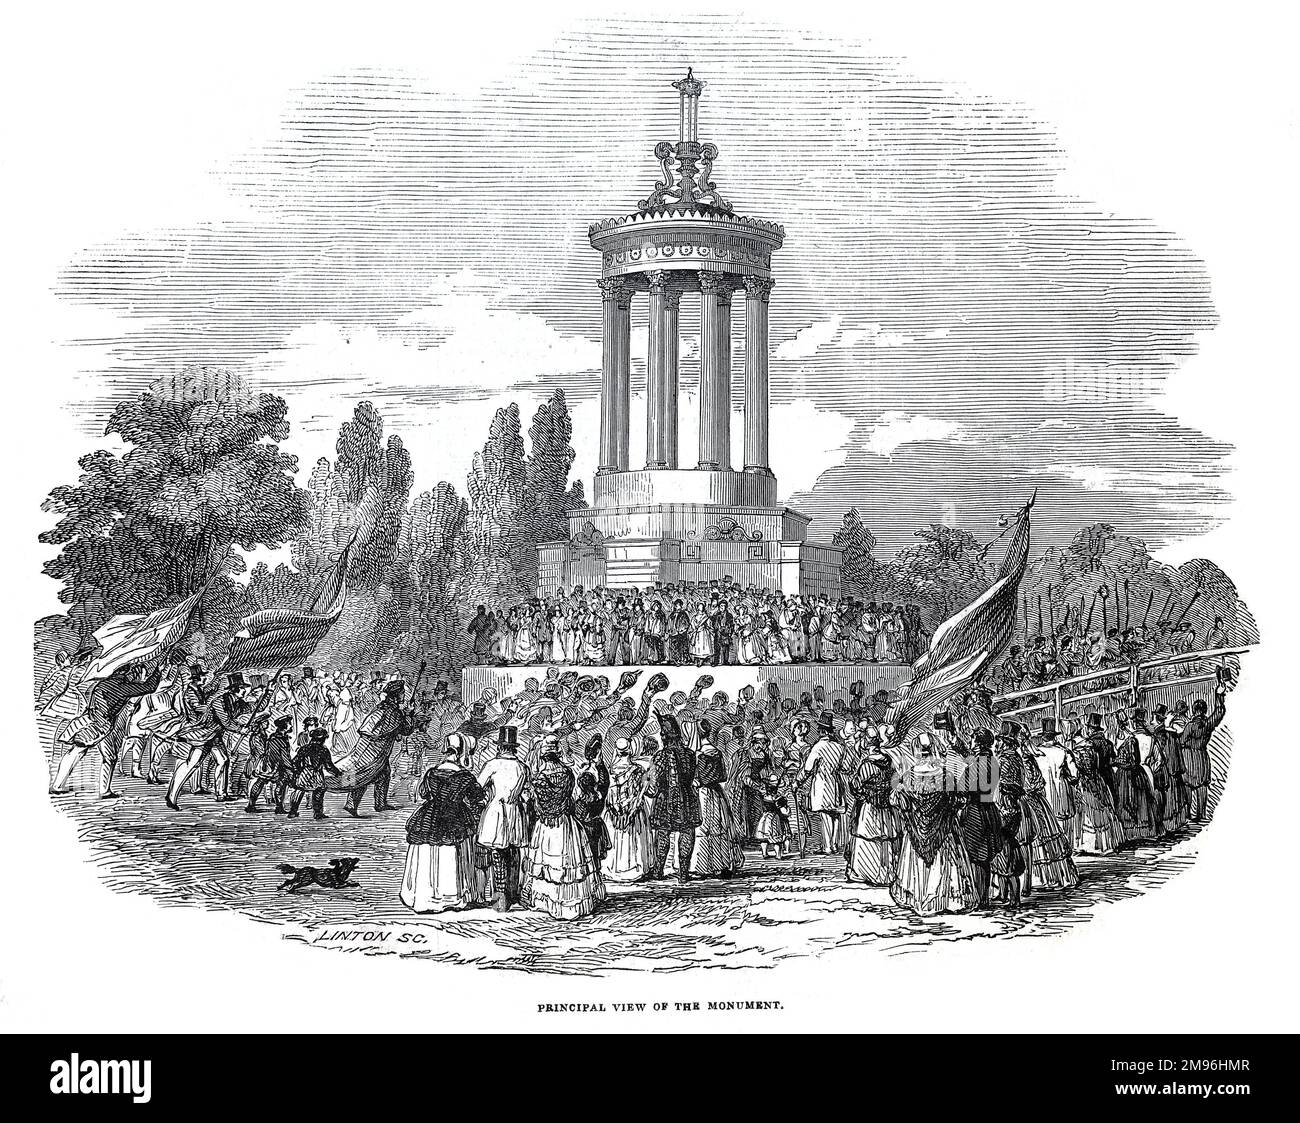 Festival de Burns en el Monumento a Burns en Ayr, 1844. Ilustración en blanco y negro del London Illustrated News; agosto de 1844. Foto de stock